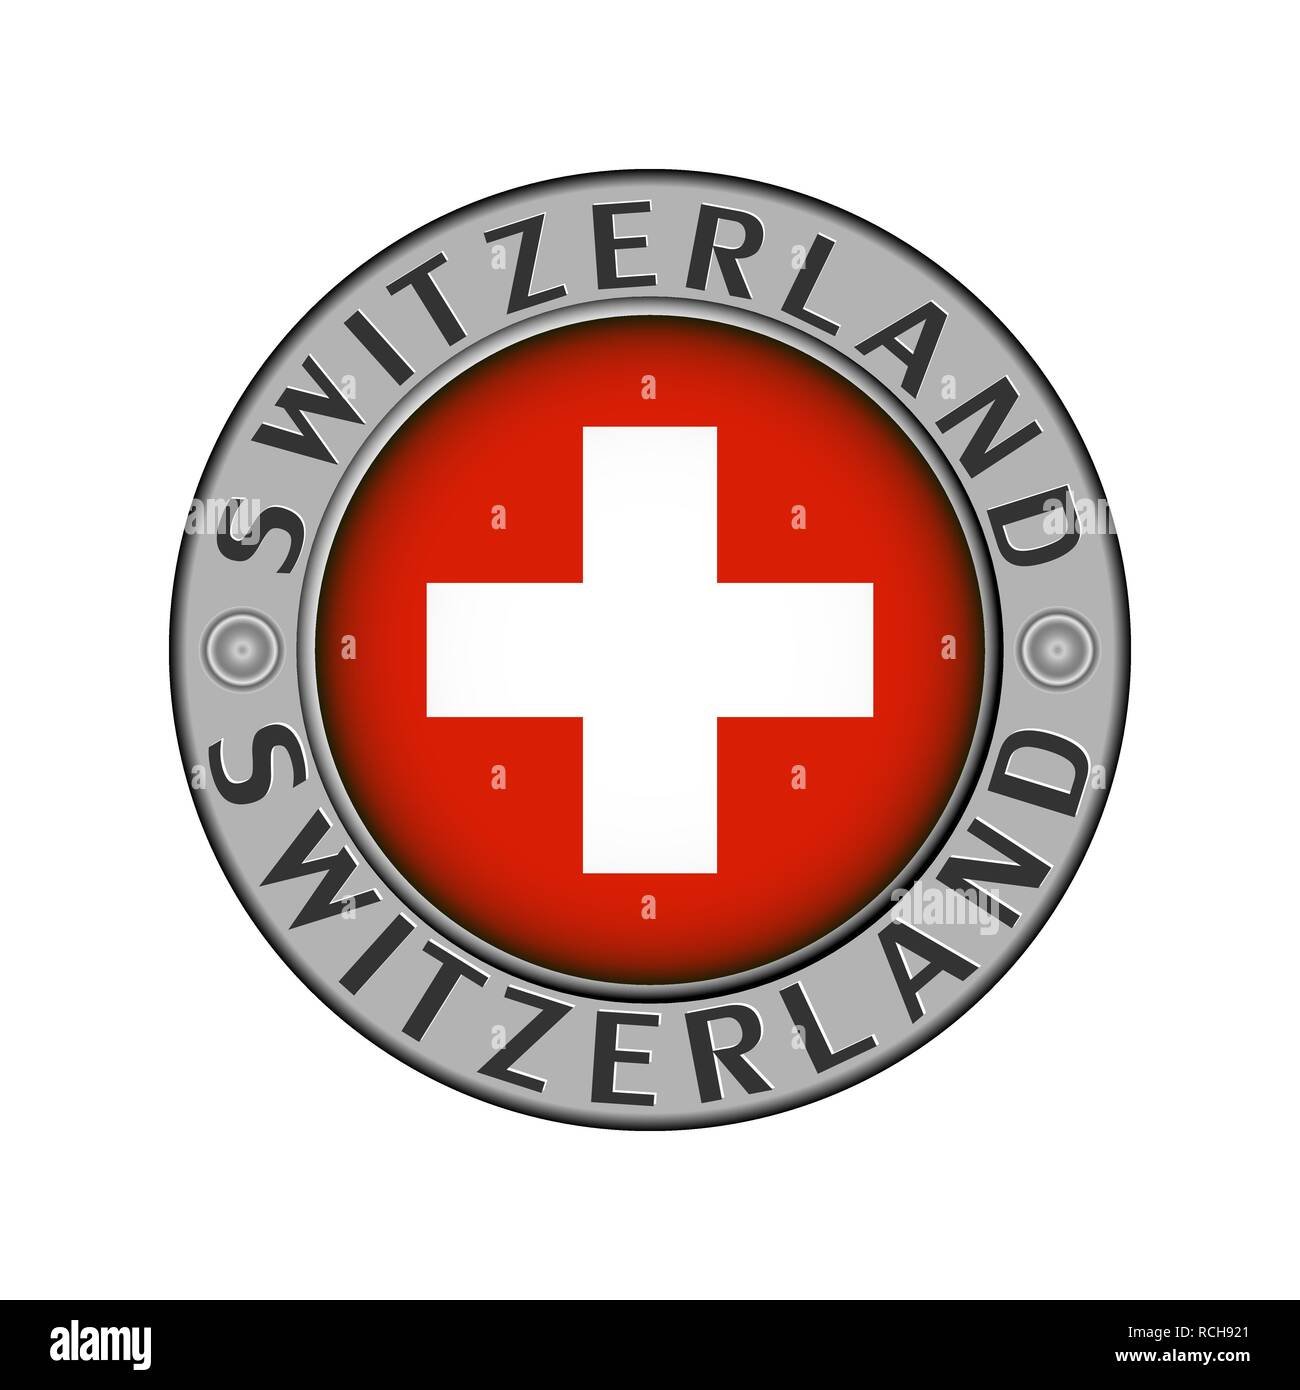 Rotondo di metallo medaglione con il nome del paese svizzera e un indicatore rotondo nel centro Illustrazione Vettoriale